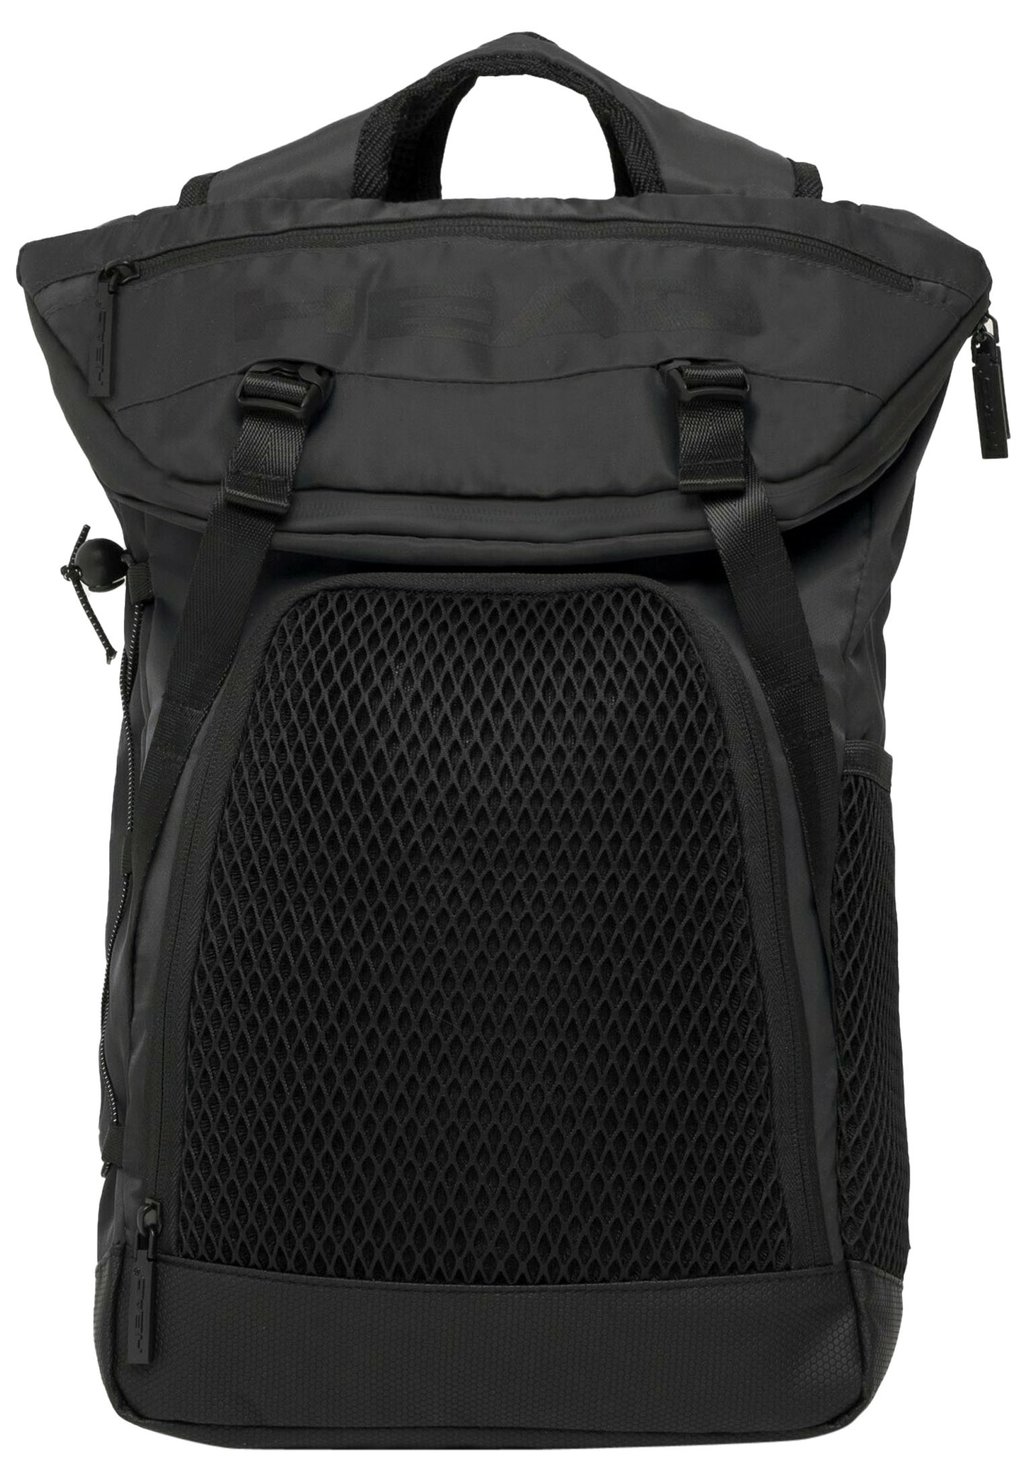 Рюкзак для путешествий Head Net Vertical, чёрный